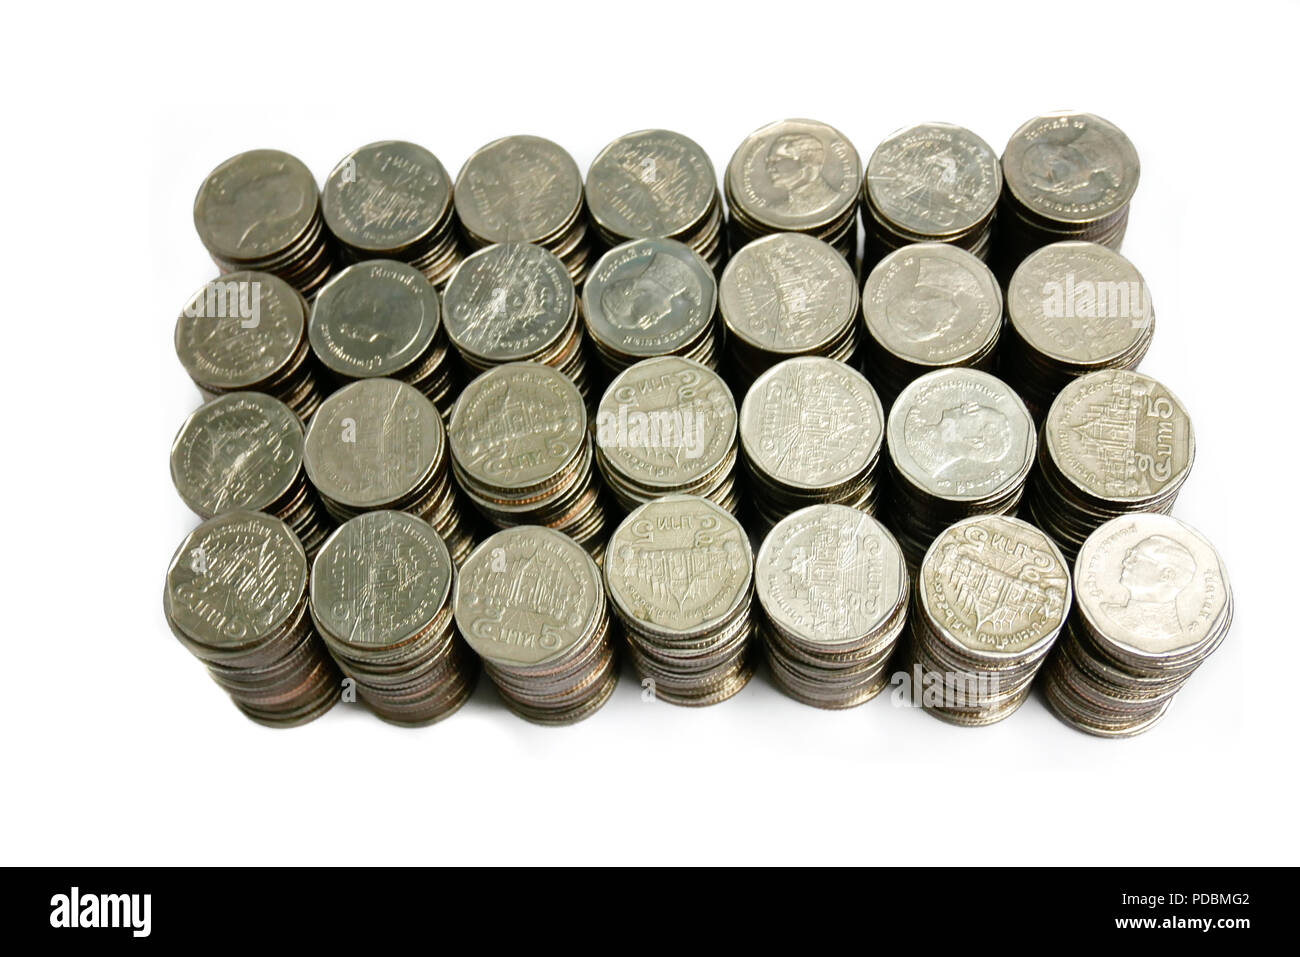 Die Währung Baht Münzen, die auf weißem oder isolierte Hintergrund sortiert sind, bereit für den Einsatz in Business, Speichern oder Finanzbranche Konzept Stockfoto